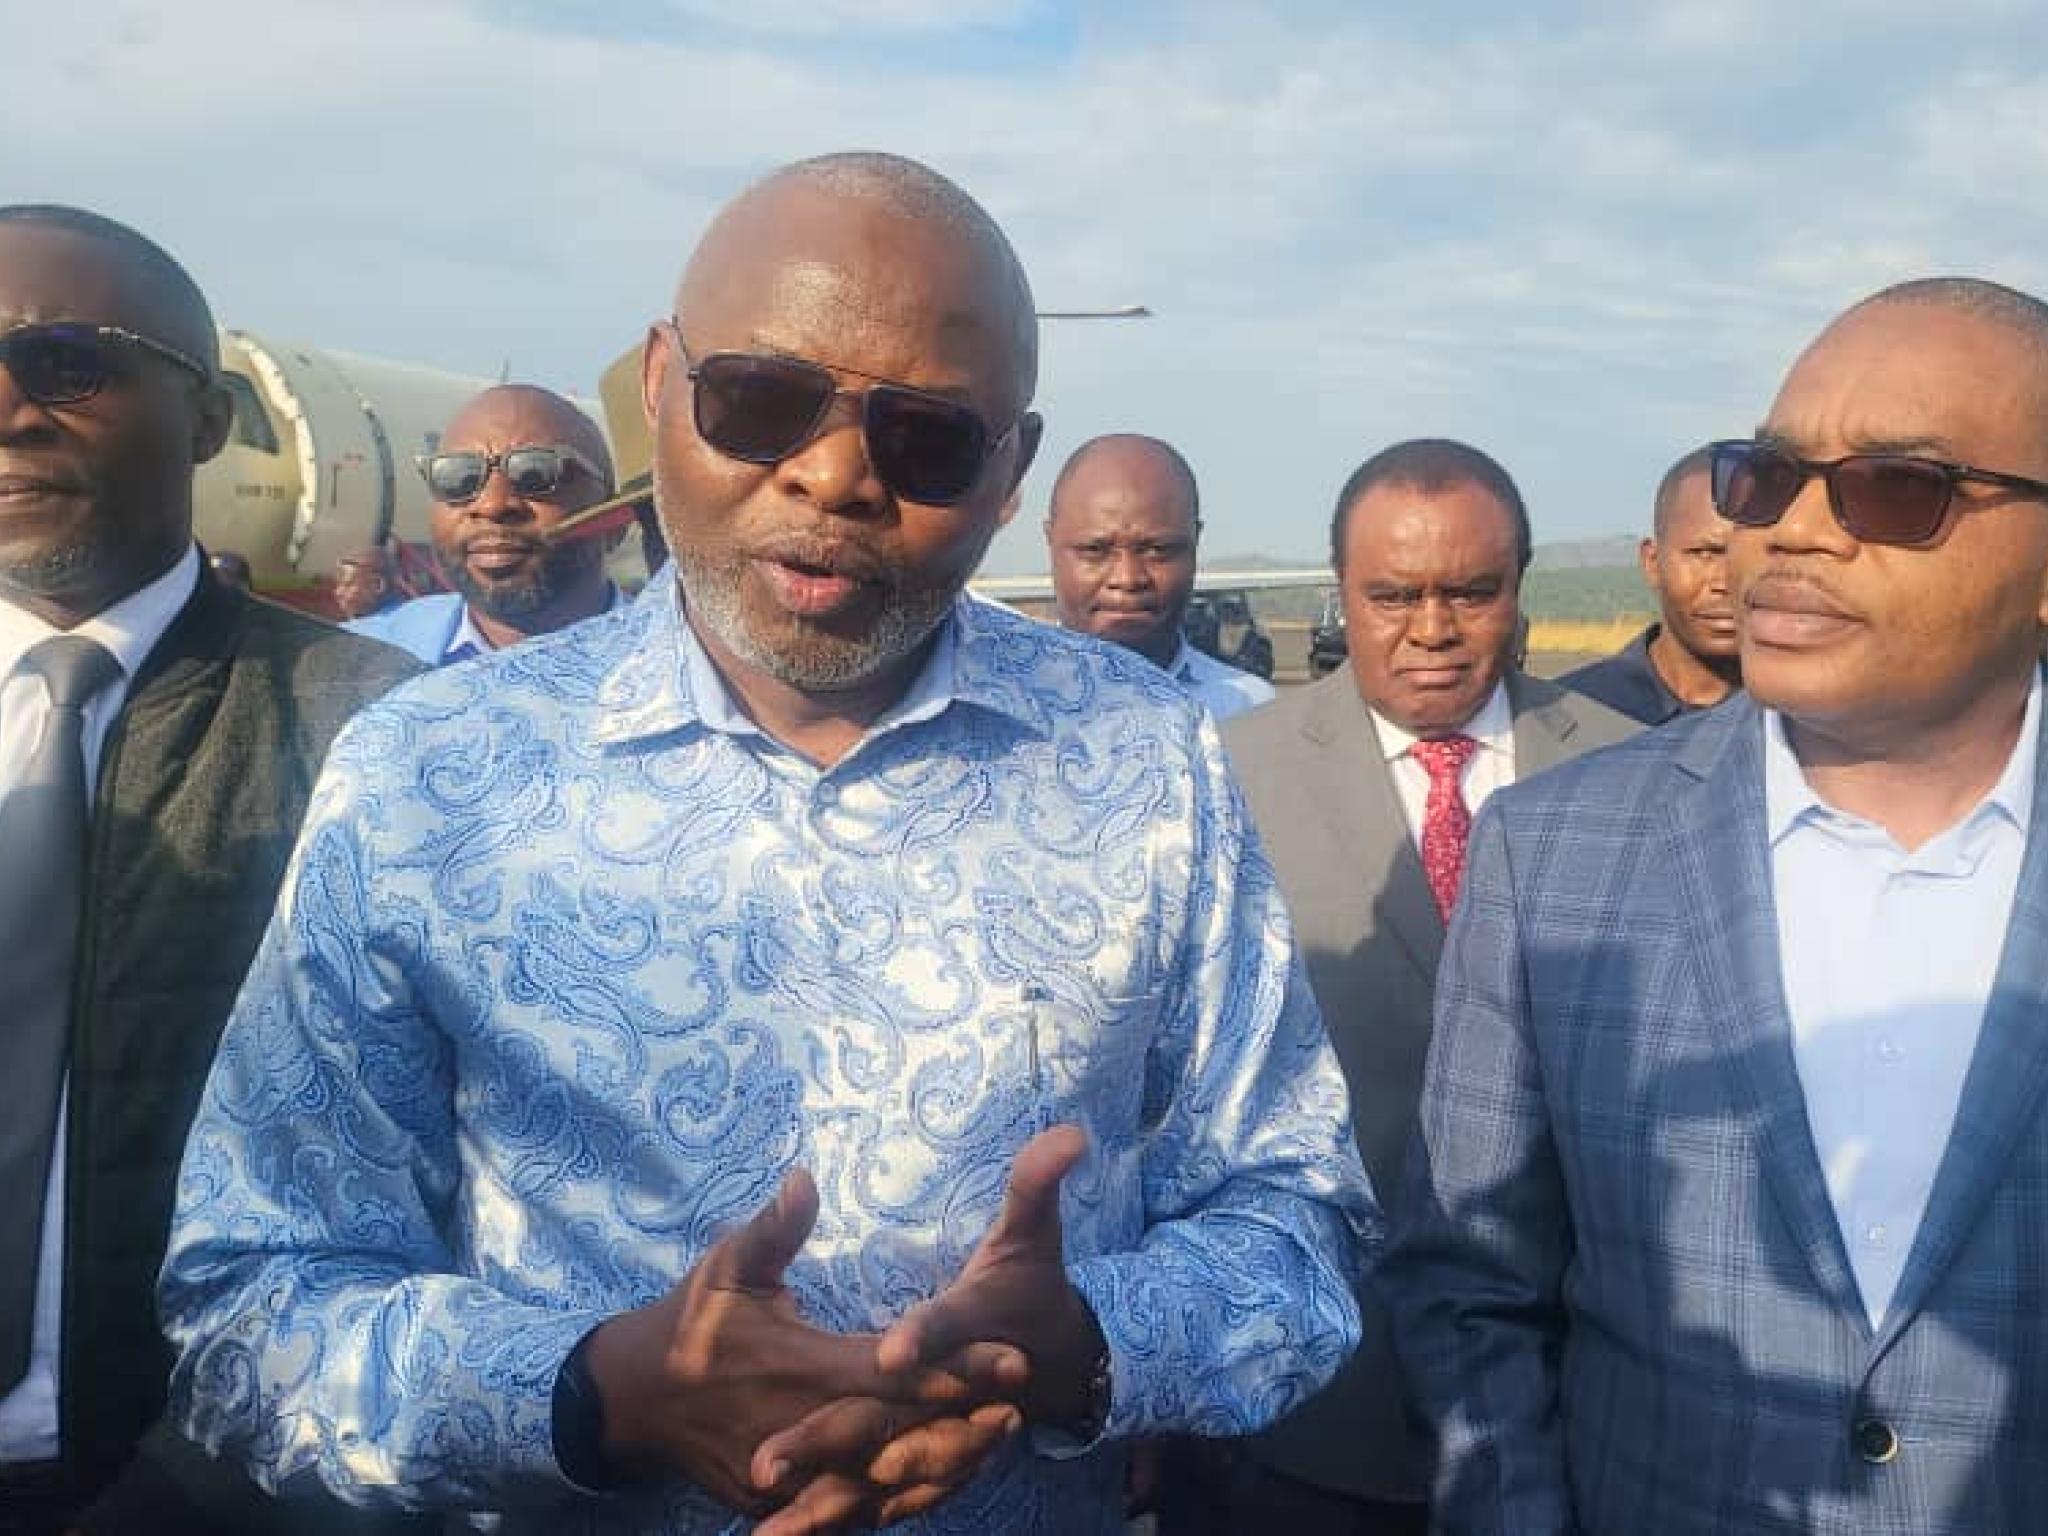 Le VPM de l'économie, Vital Kamerhe acceuilli à Bukavu par Théo Ngwabidje, gouverneur du Sud-Kivu.